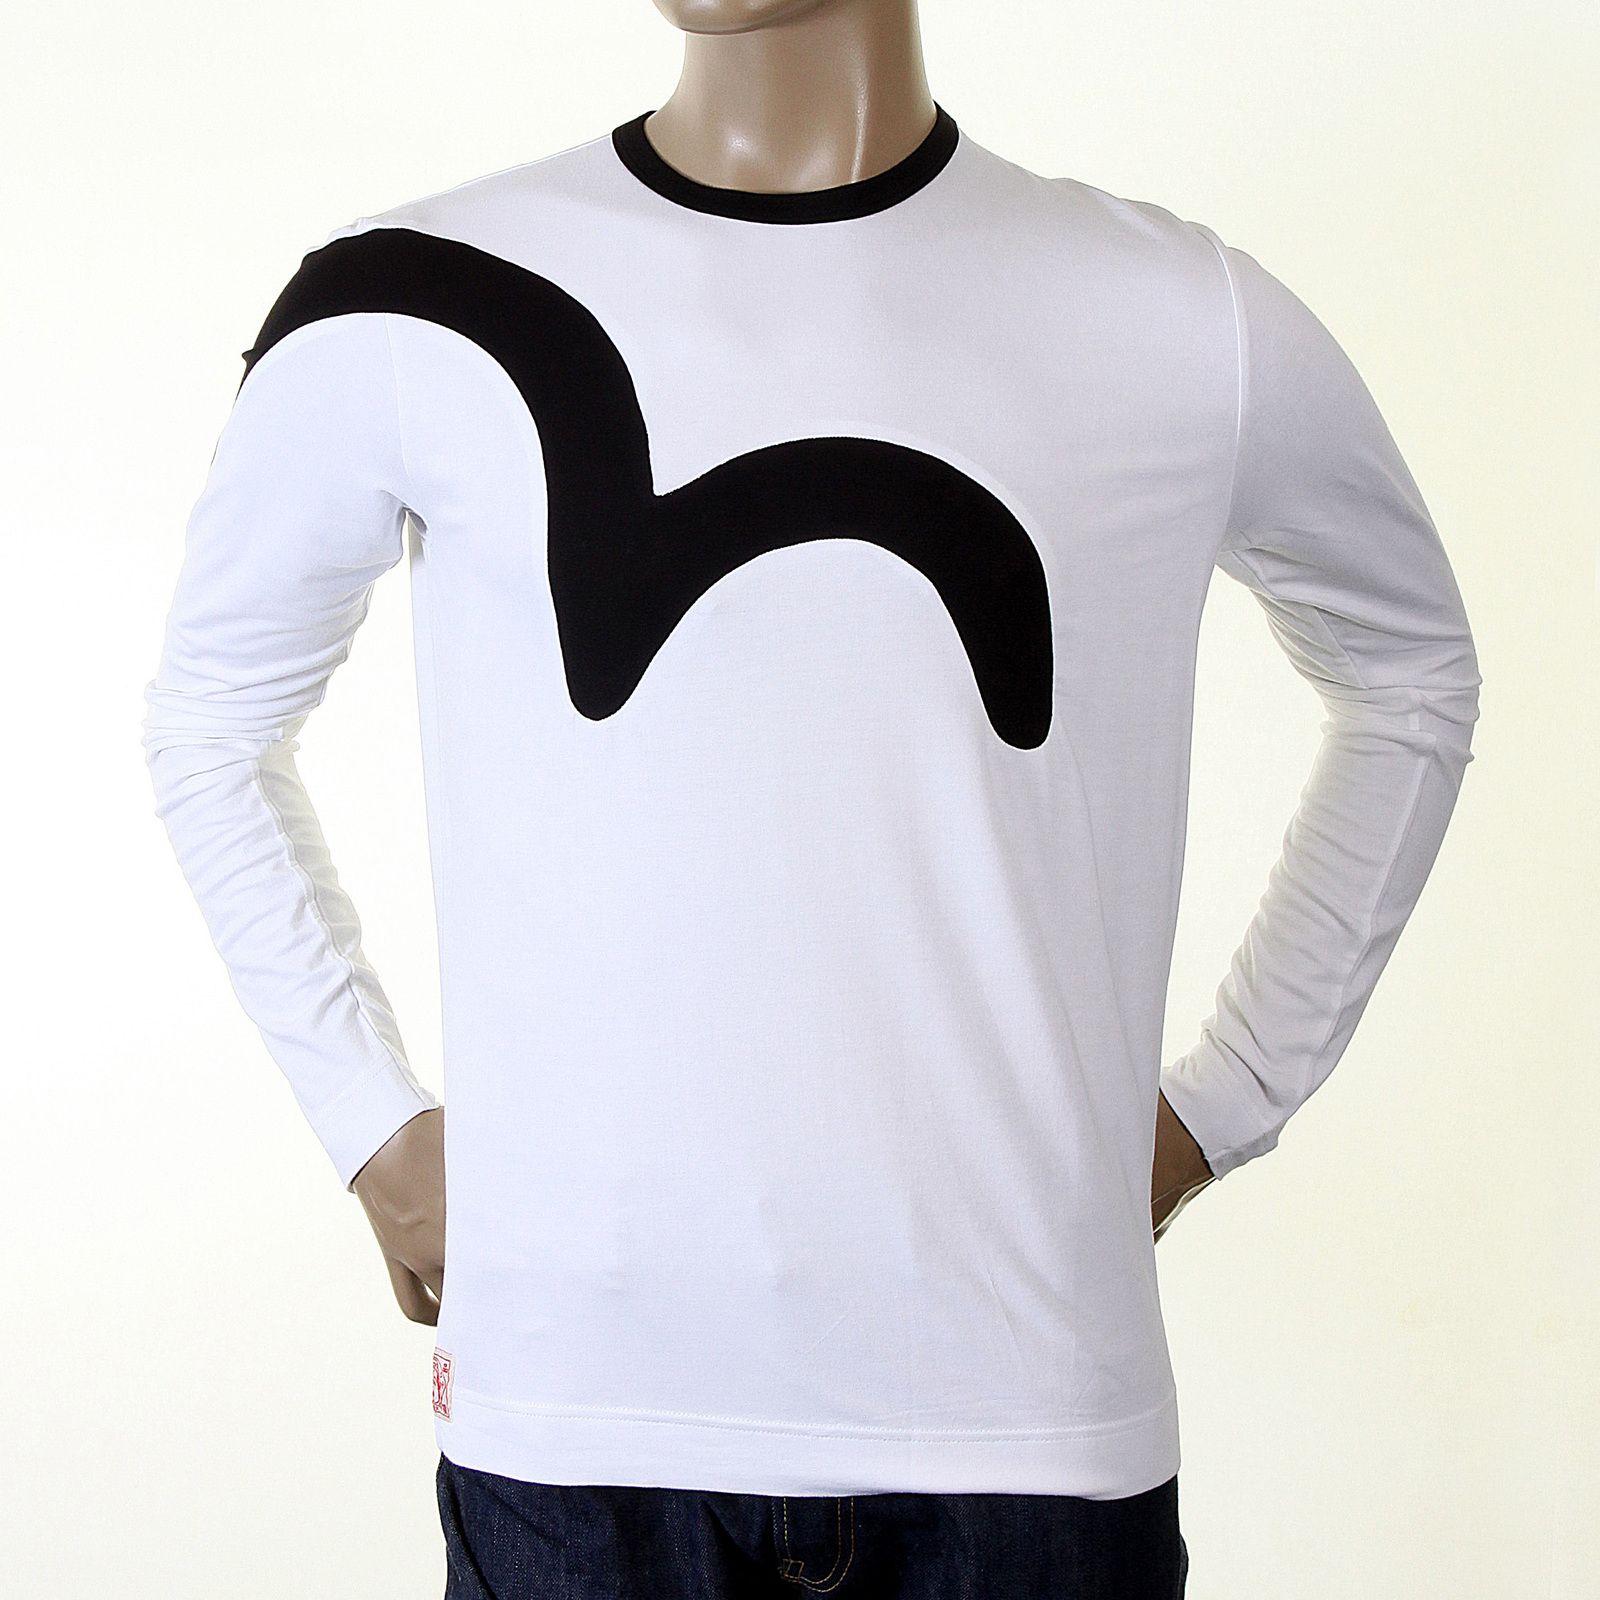 Insert Logo - Buy White Coloured Logo Insert Evisu T-shirt at Togged